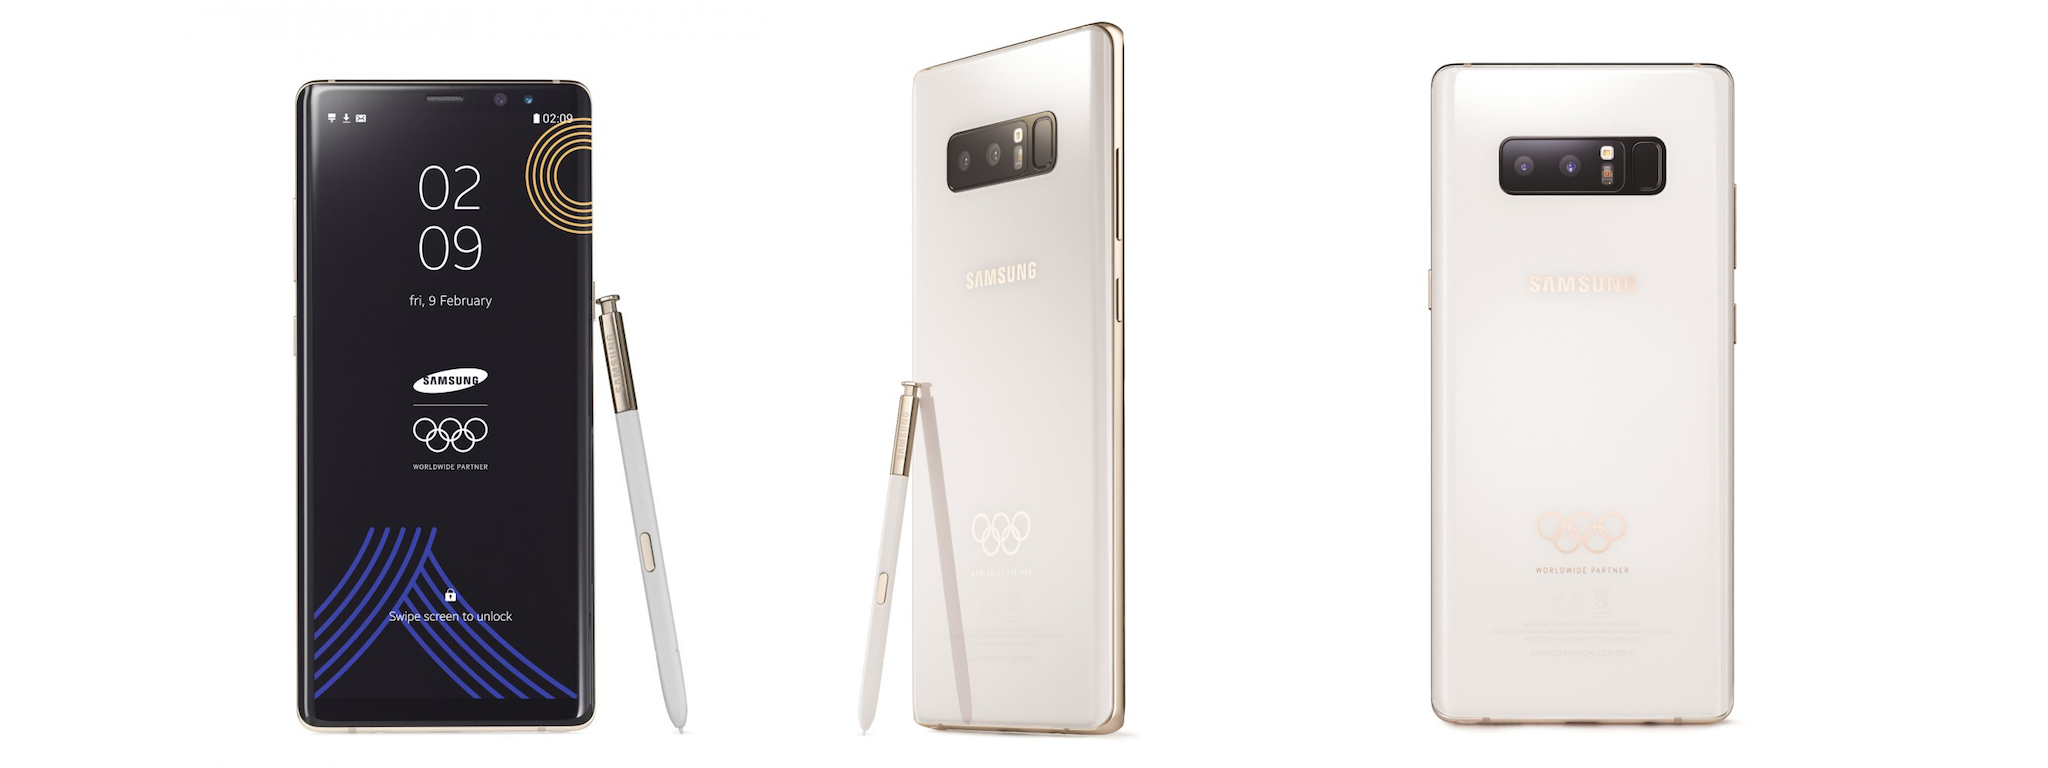 Samsung giới thiệu Note8 dành cho Olympic mùa đông với mặt lưng trắng, viền vàng